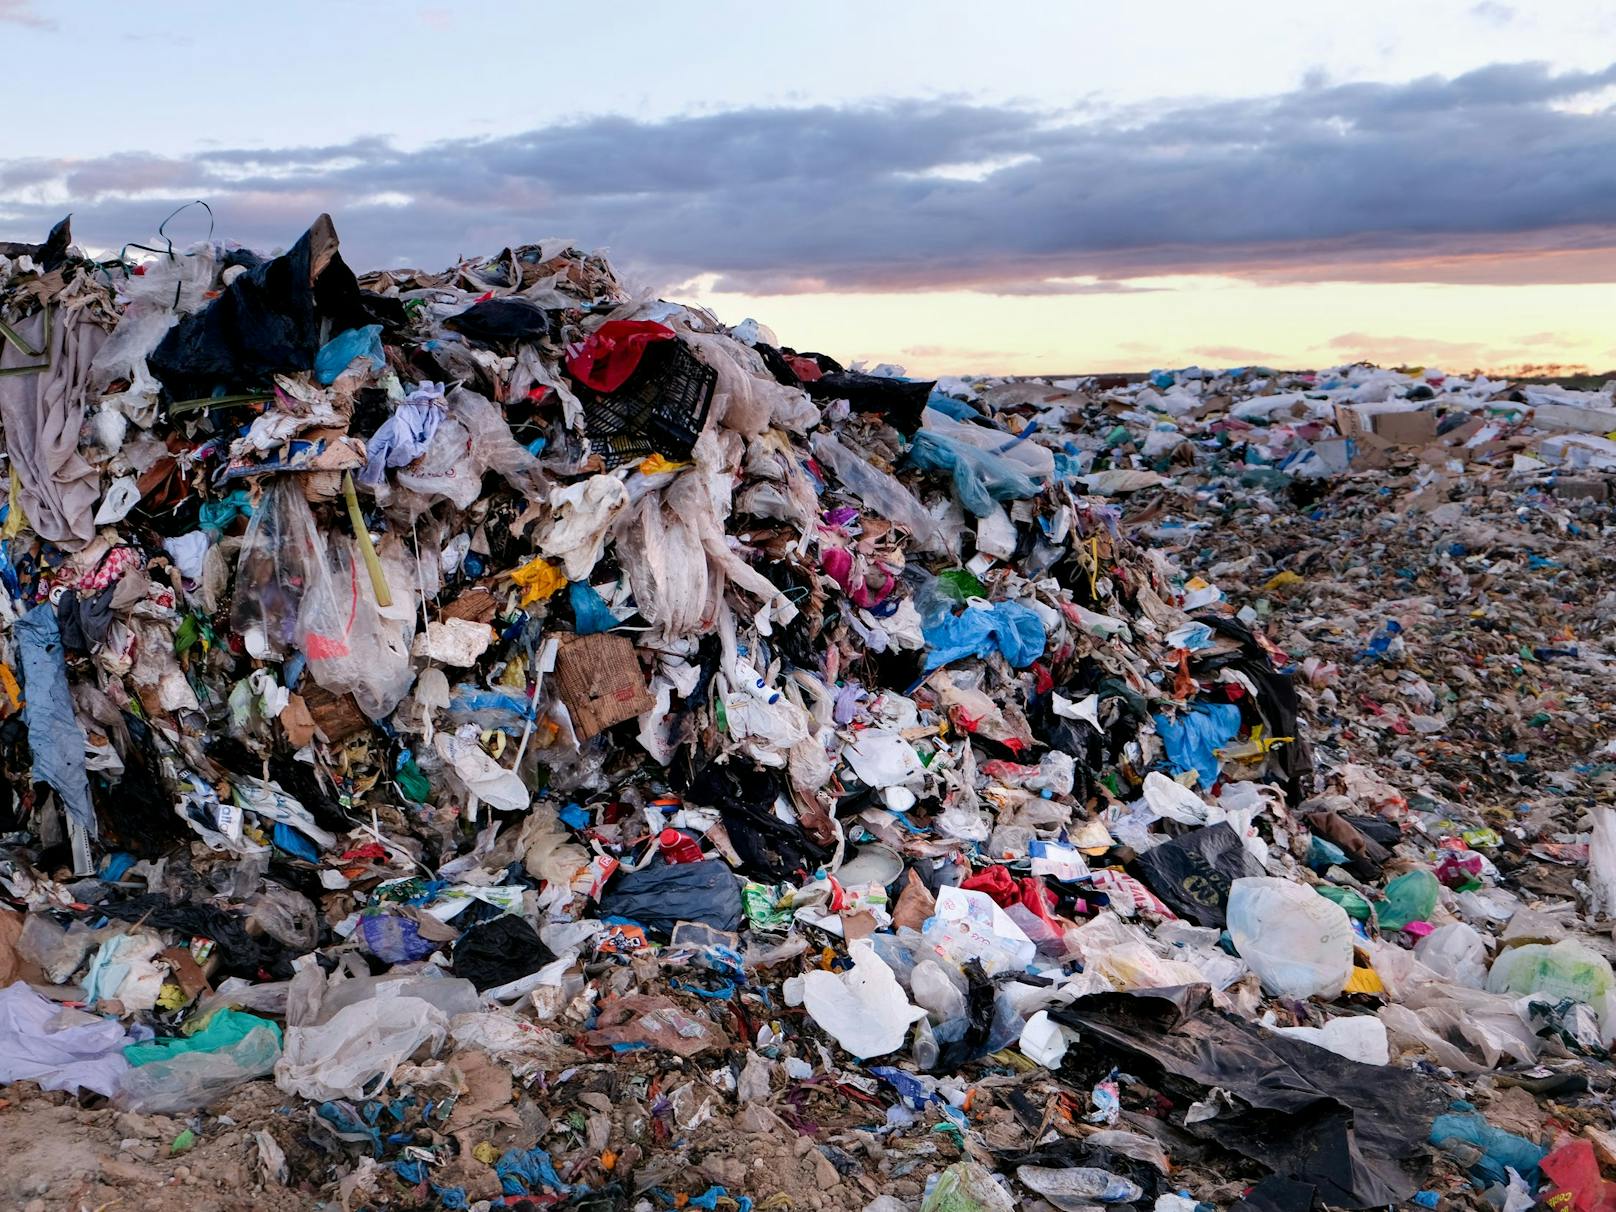 Erfolgreiches Recycling ist ein Mythos. Ein Ende der "Plastikverschmutzung" sei vor allem mit Verzicht und Mehrweg erreichbar.